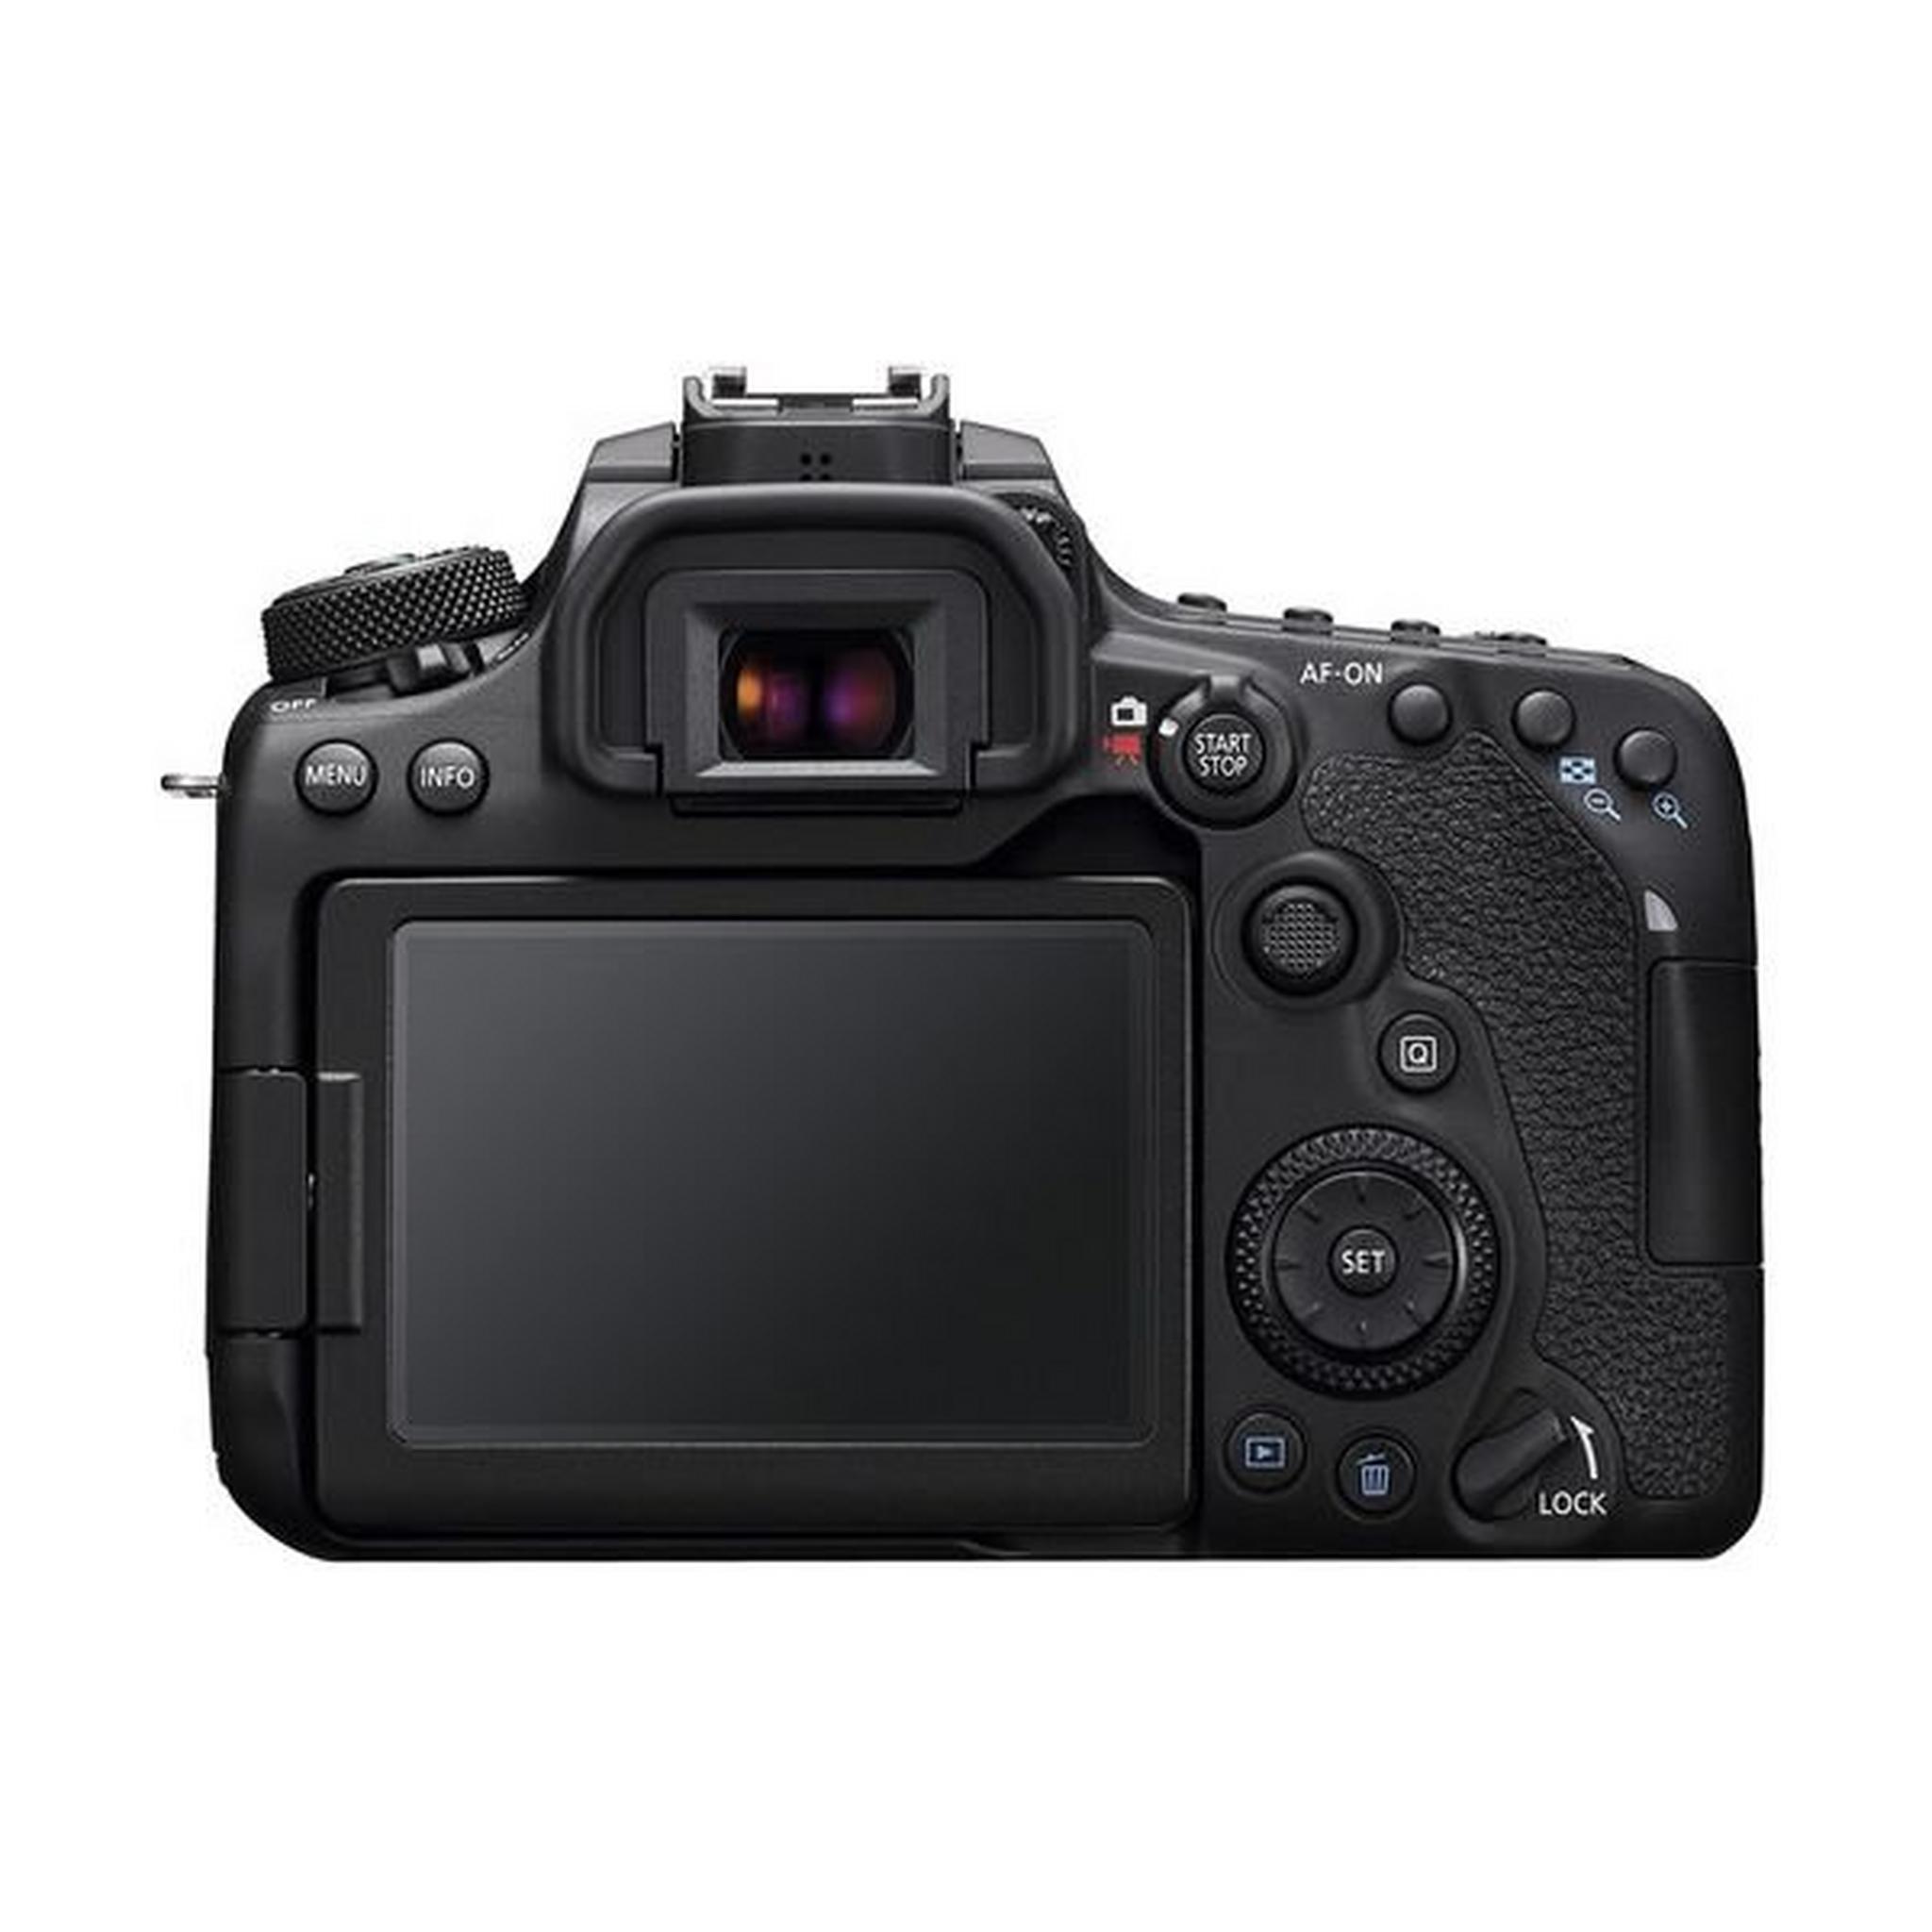 كاميرا كانون EOS 90D الرقمية بعدسة عاكسة DSLR + عدسة 18-55 ملم - أسود